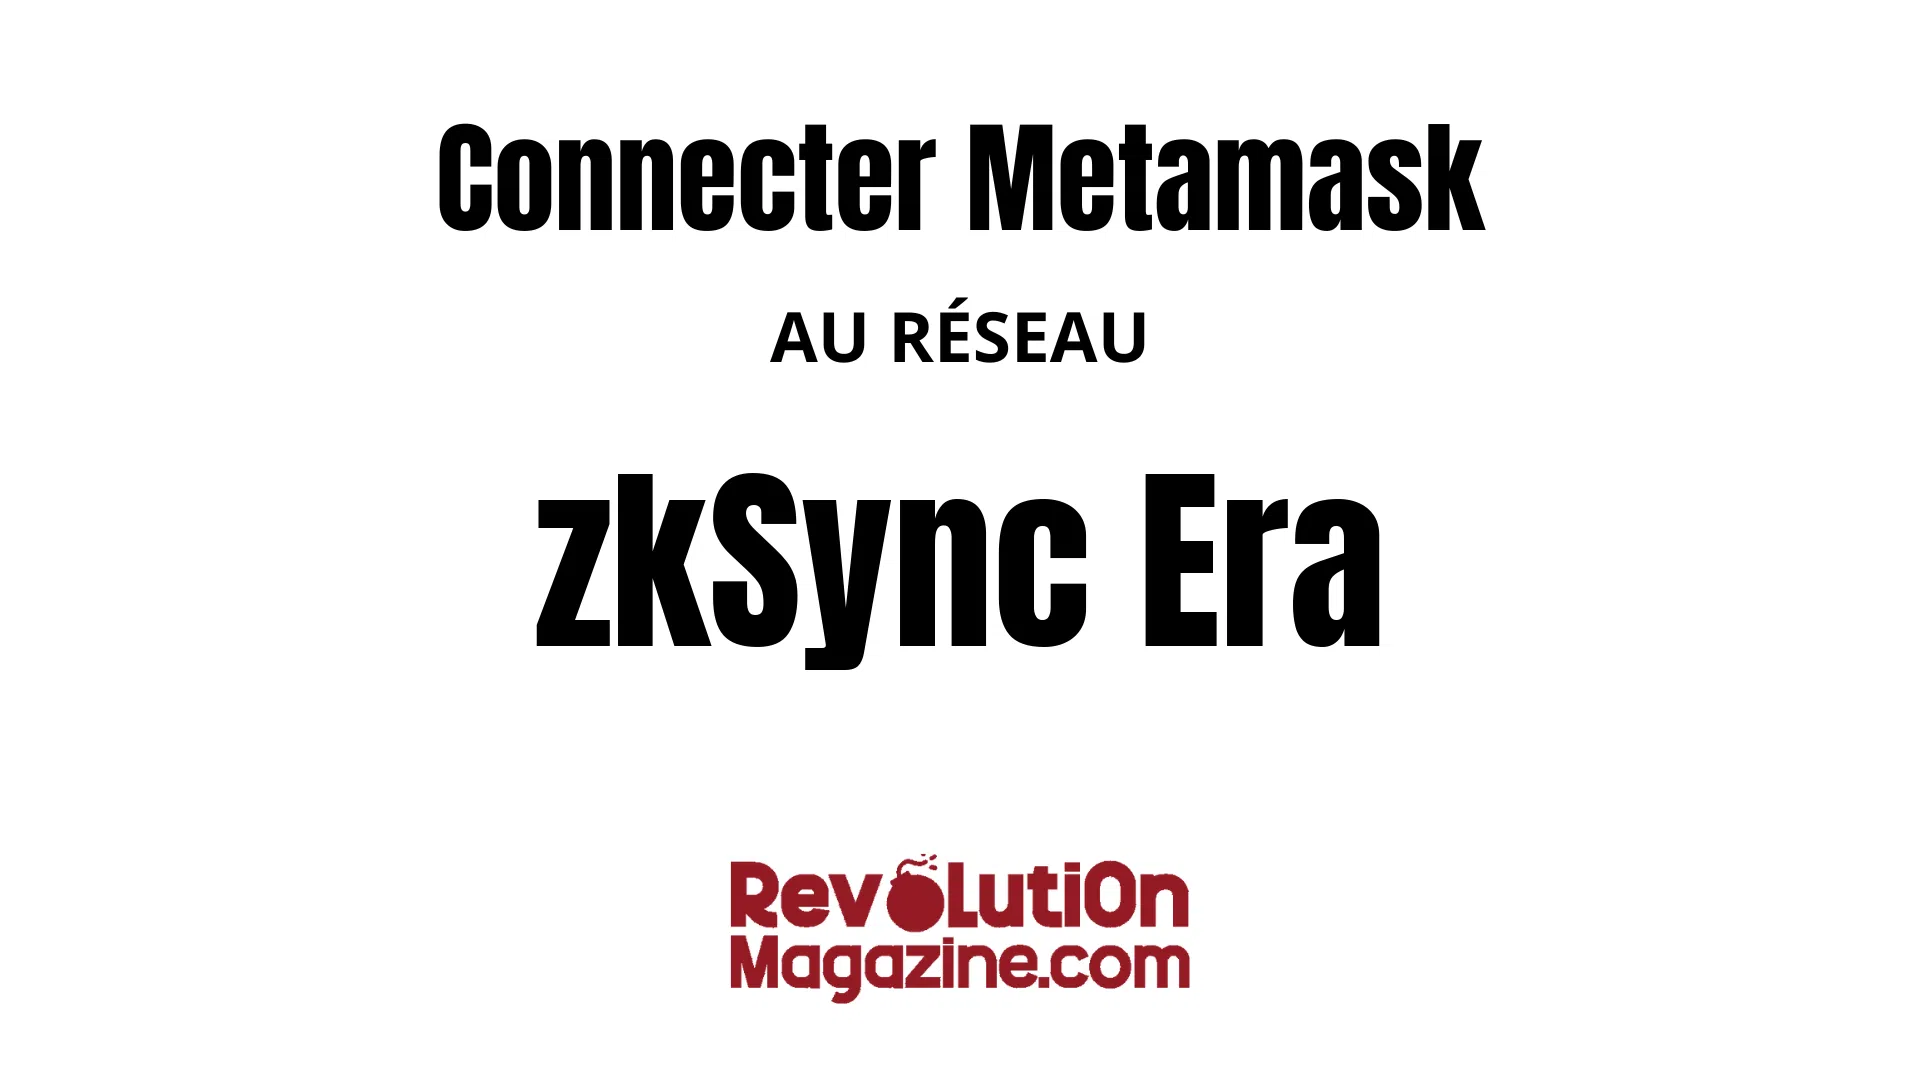 Comment ajouter le réseau zkSync Era Mainnet à votre Metamask ?